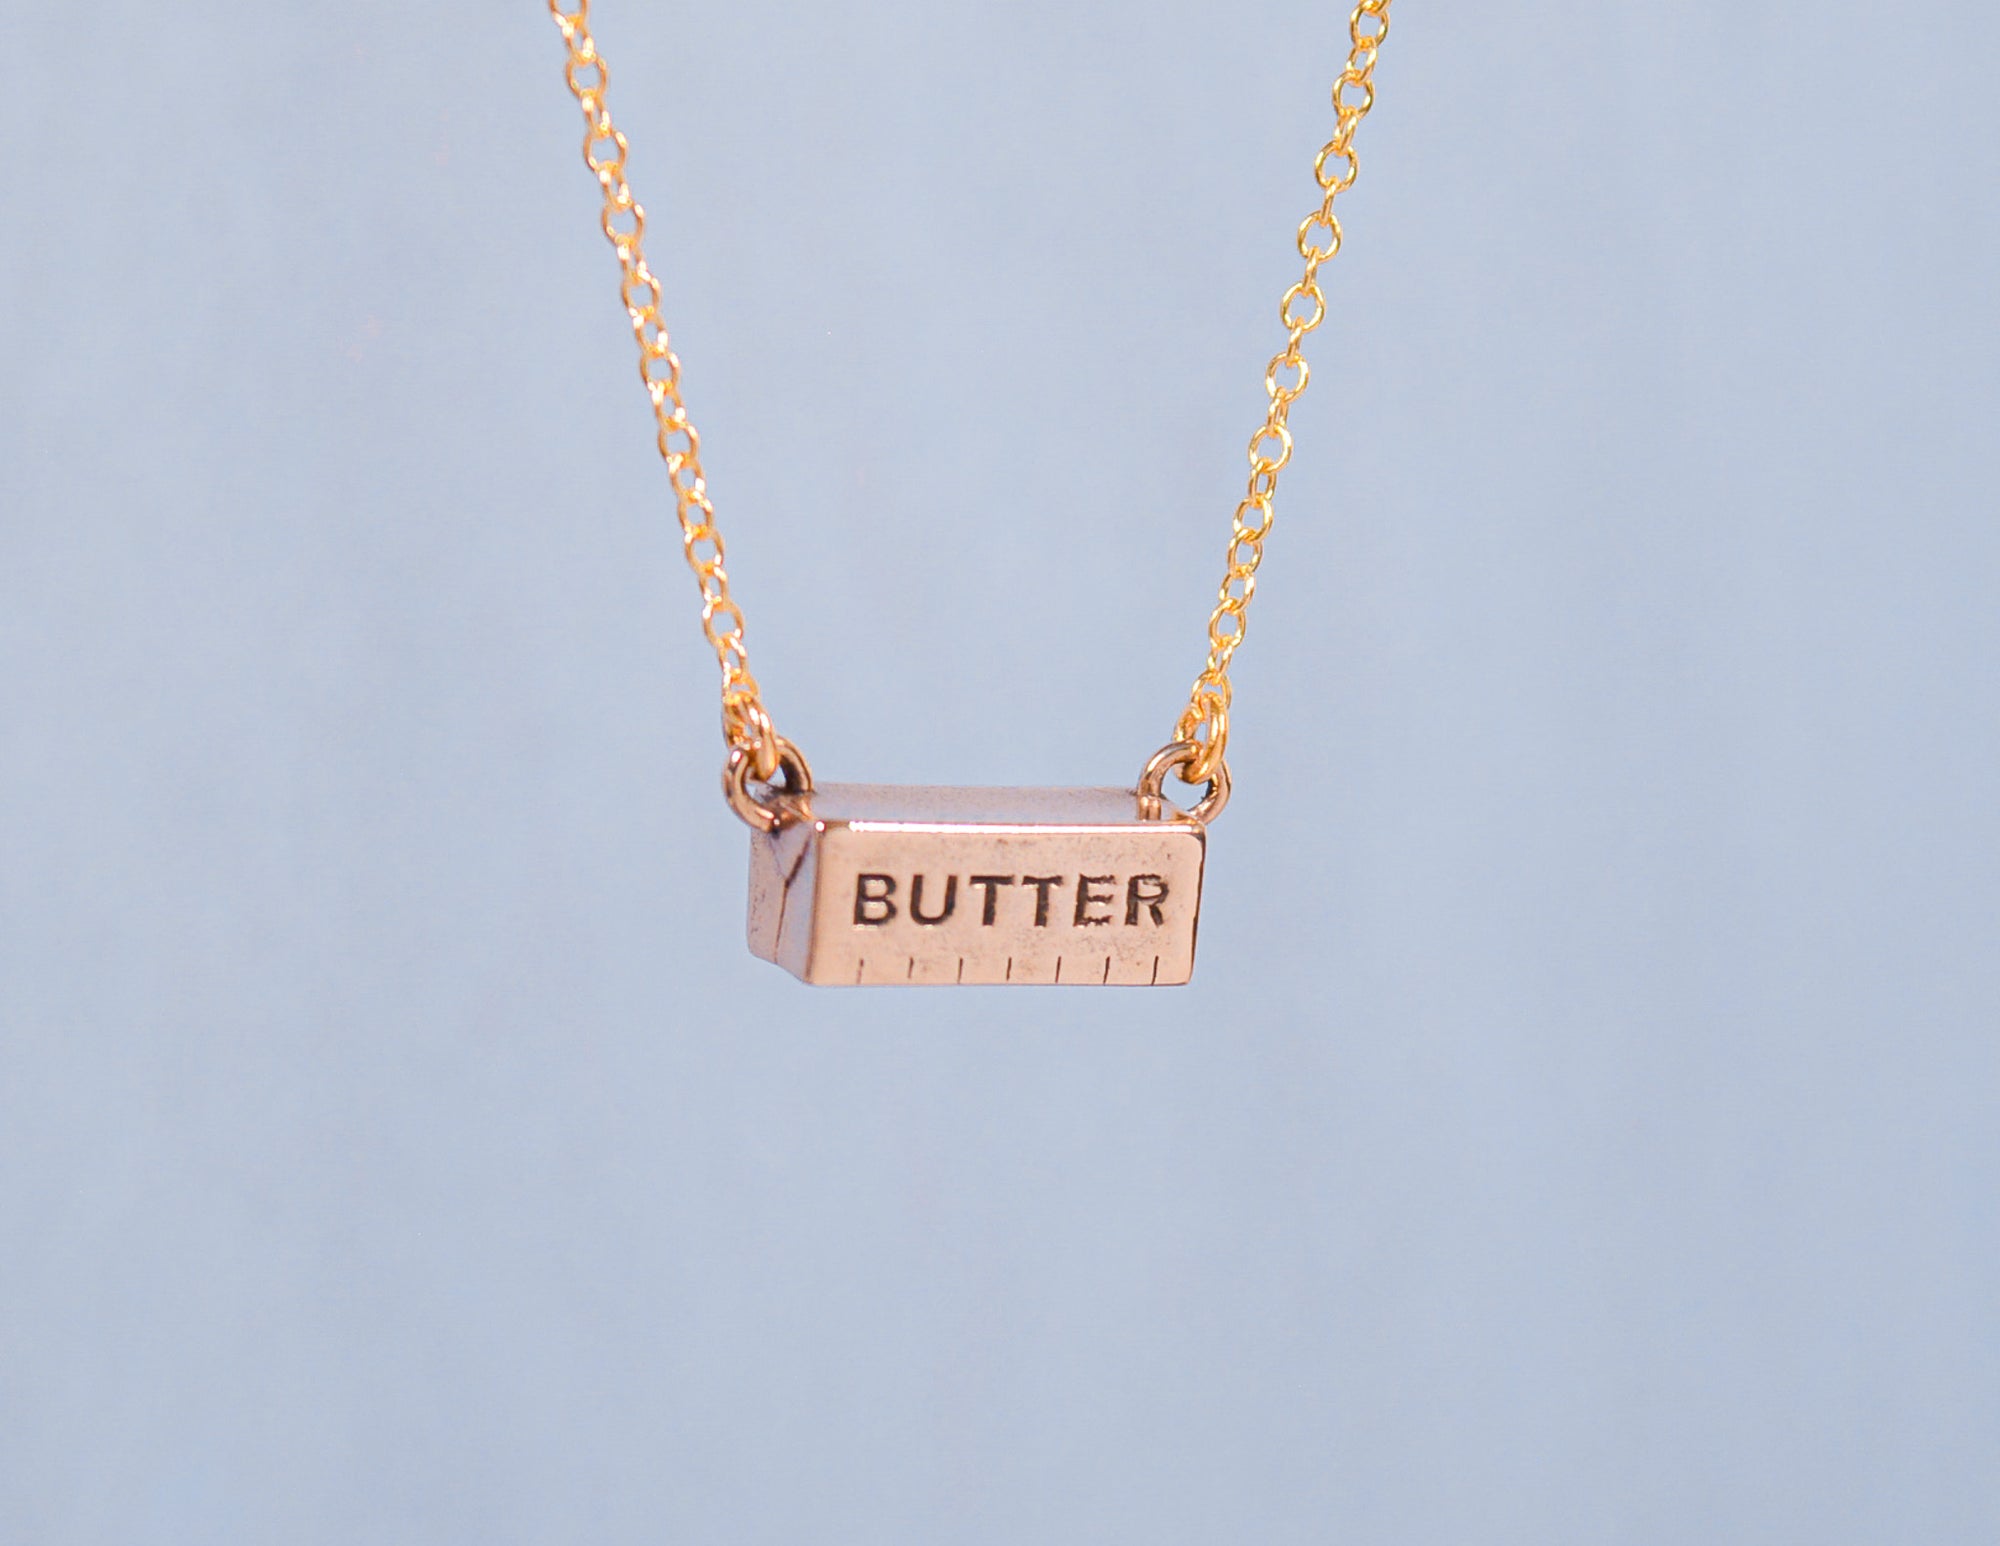 Butter Necklace - JUICE x Hannah Bartlett